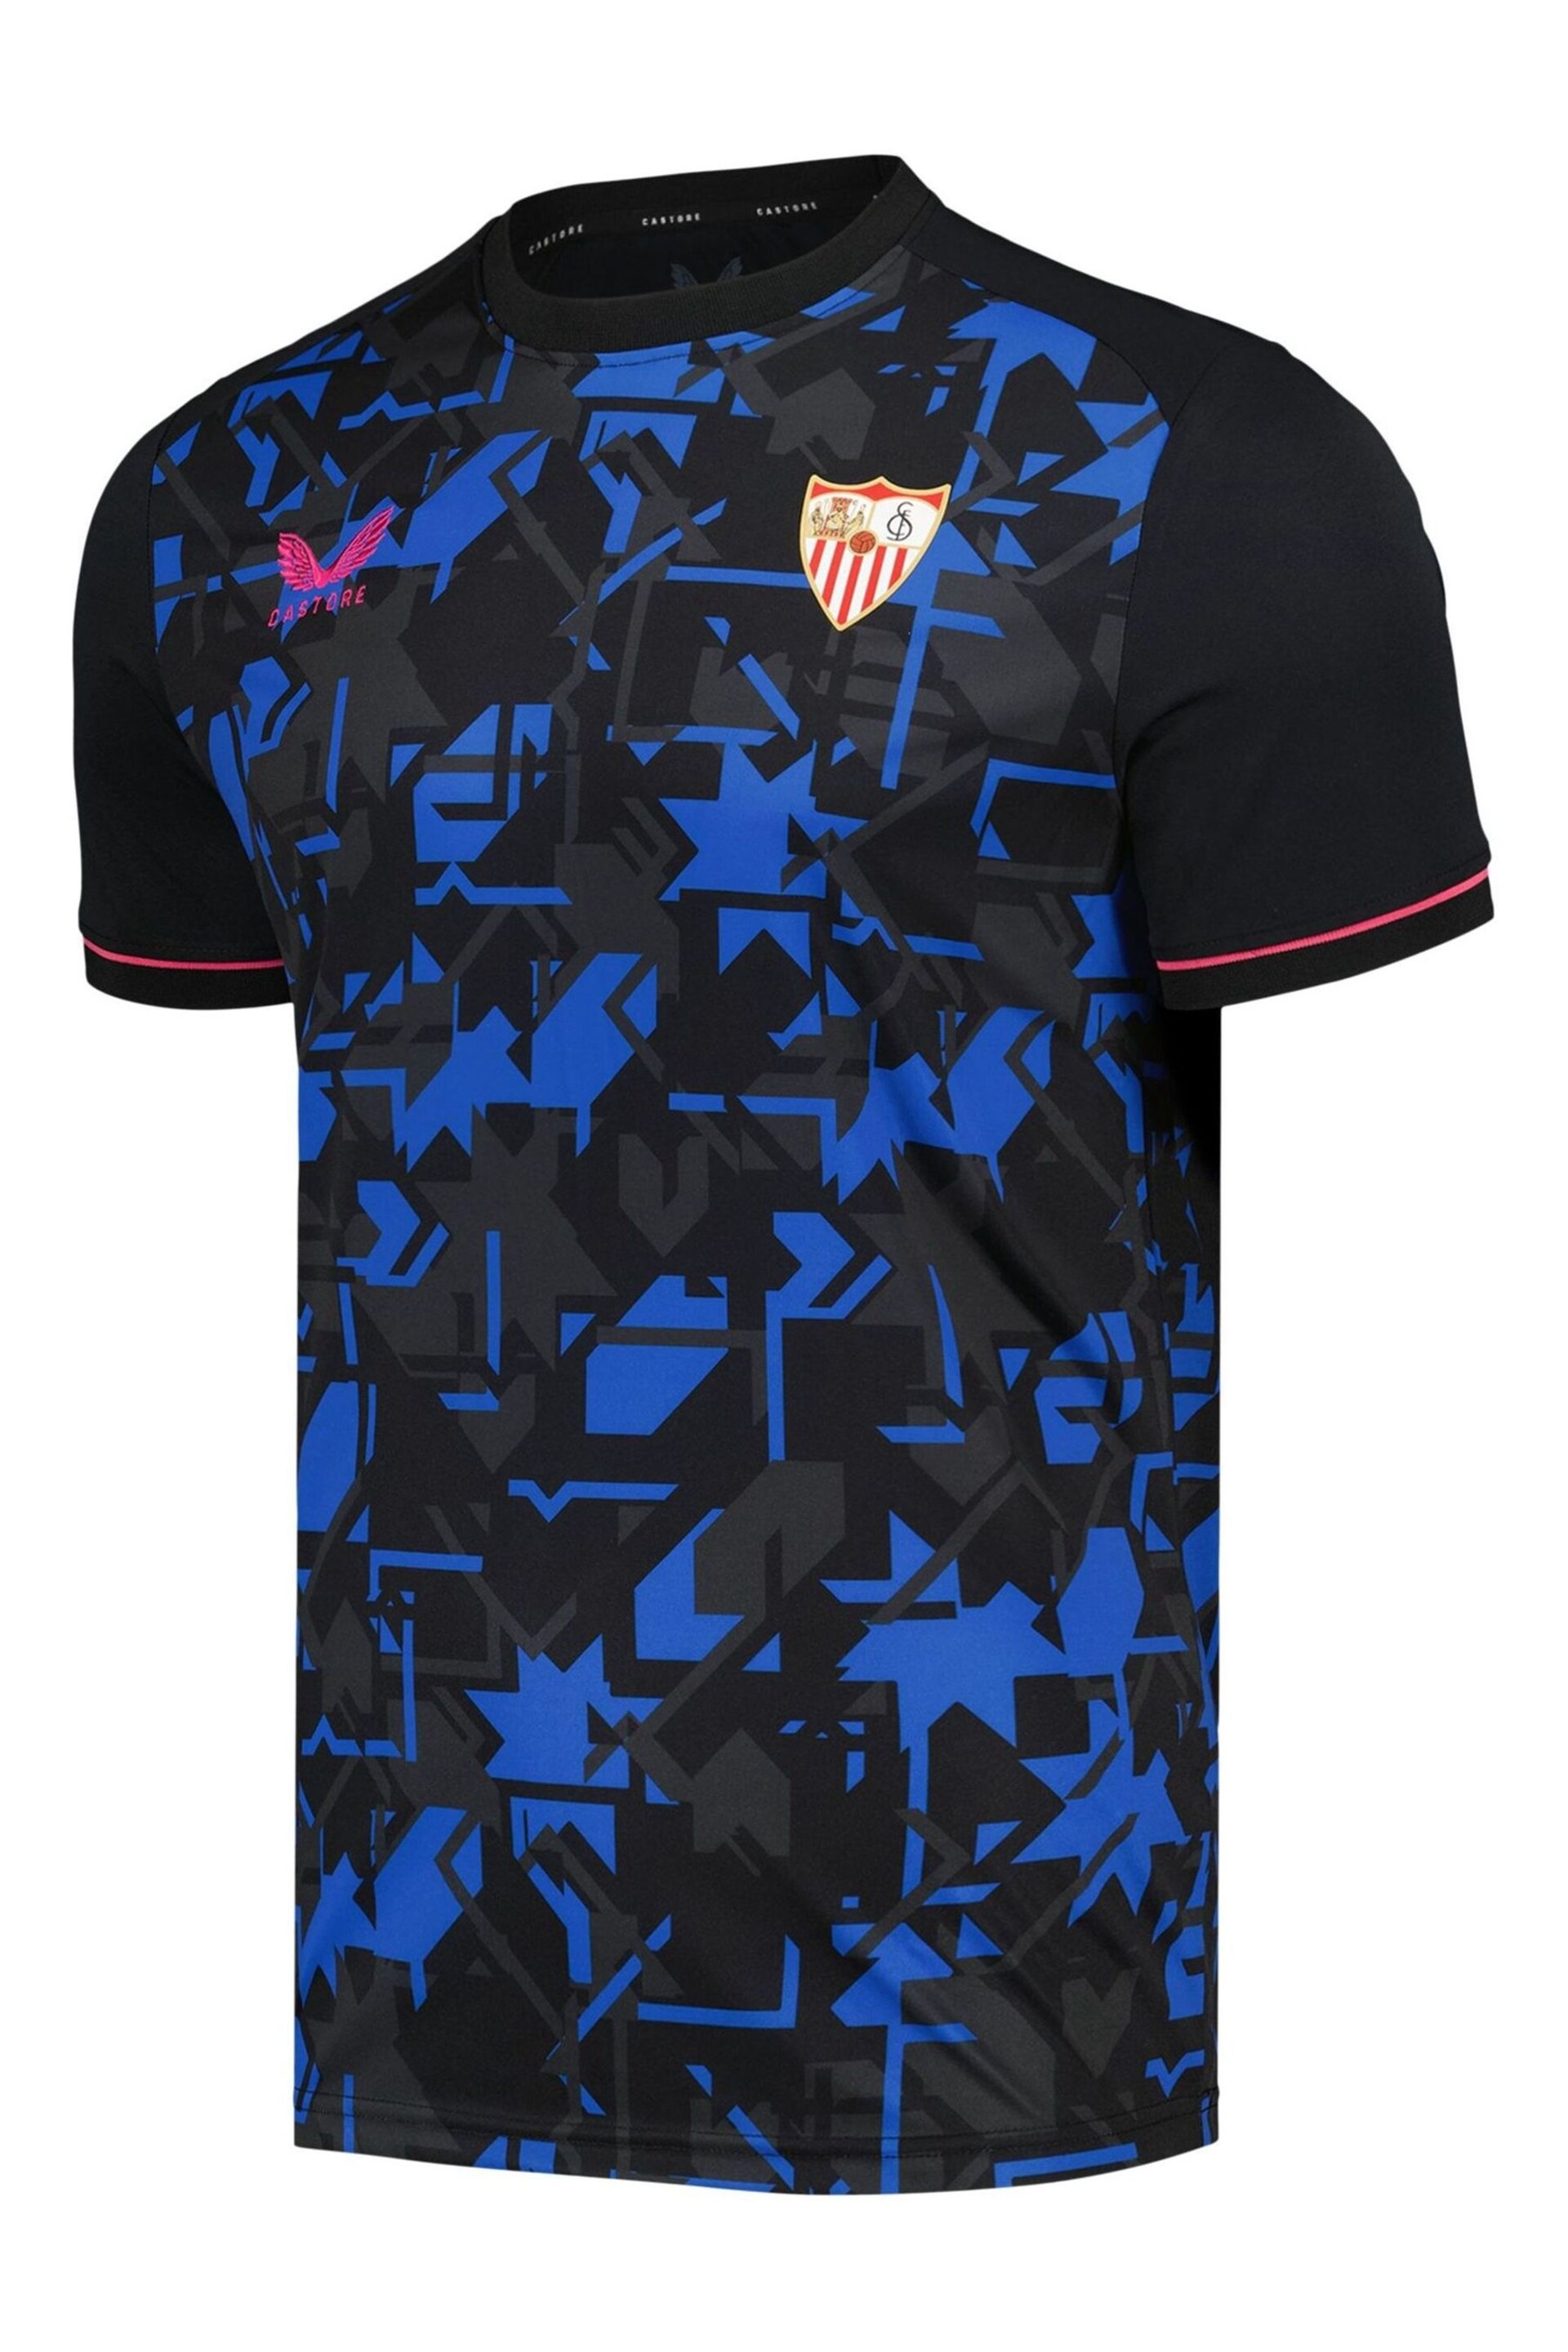 Castore Black Sevilla Third 2023-24 Shirt - Image 2 of 3